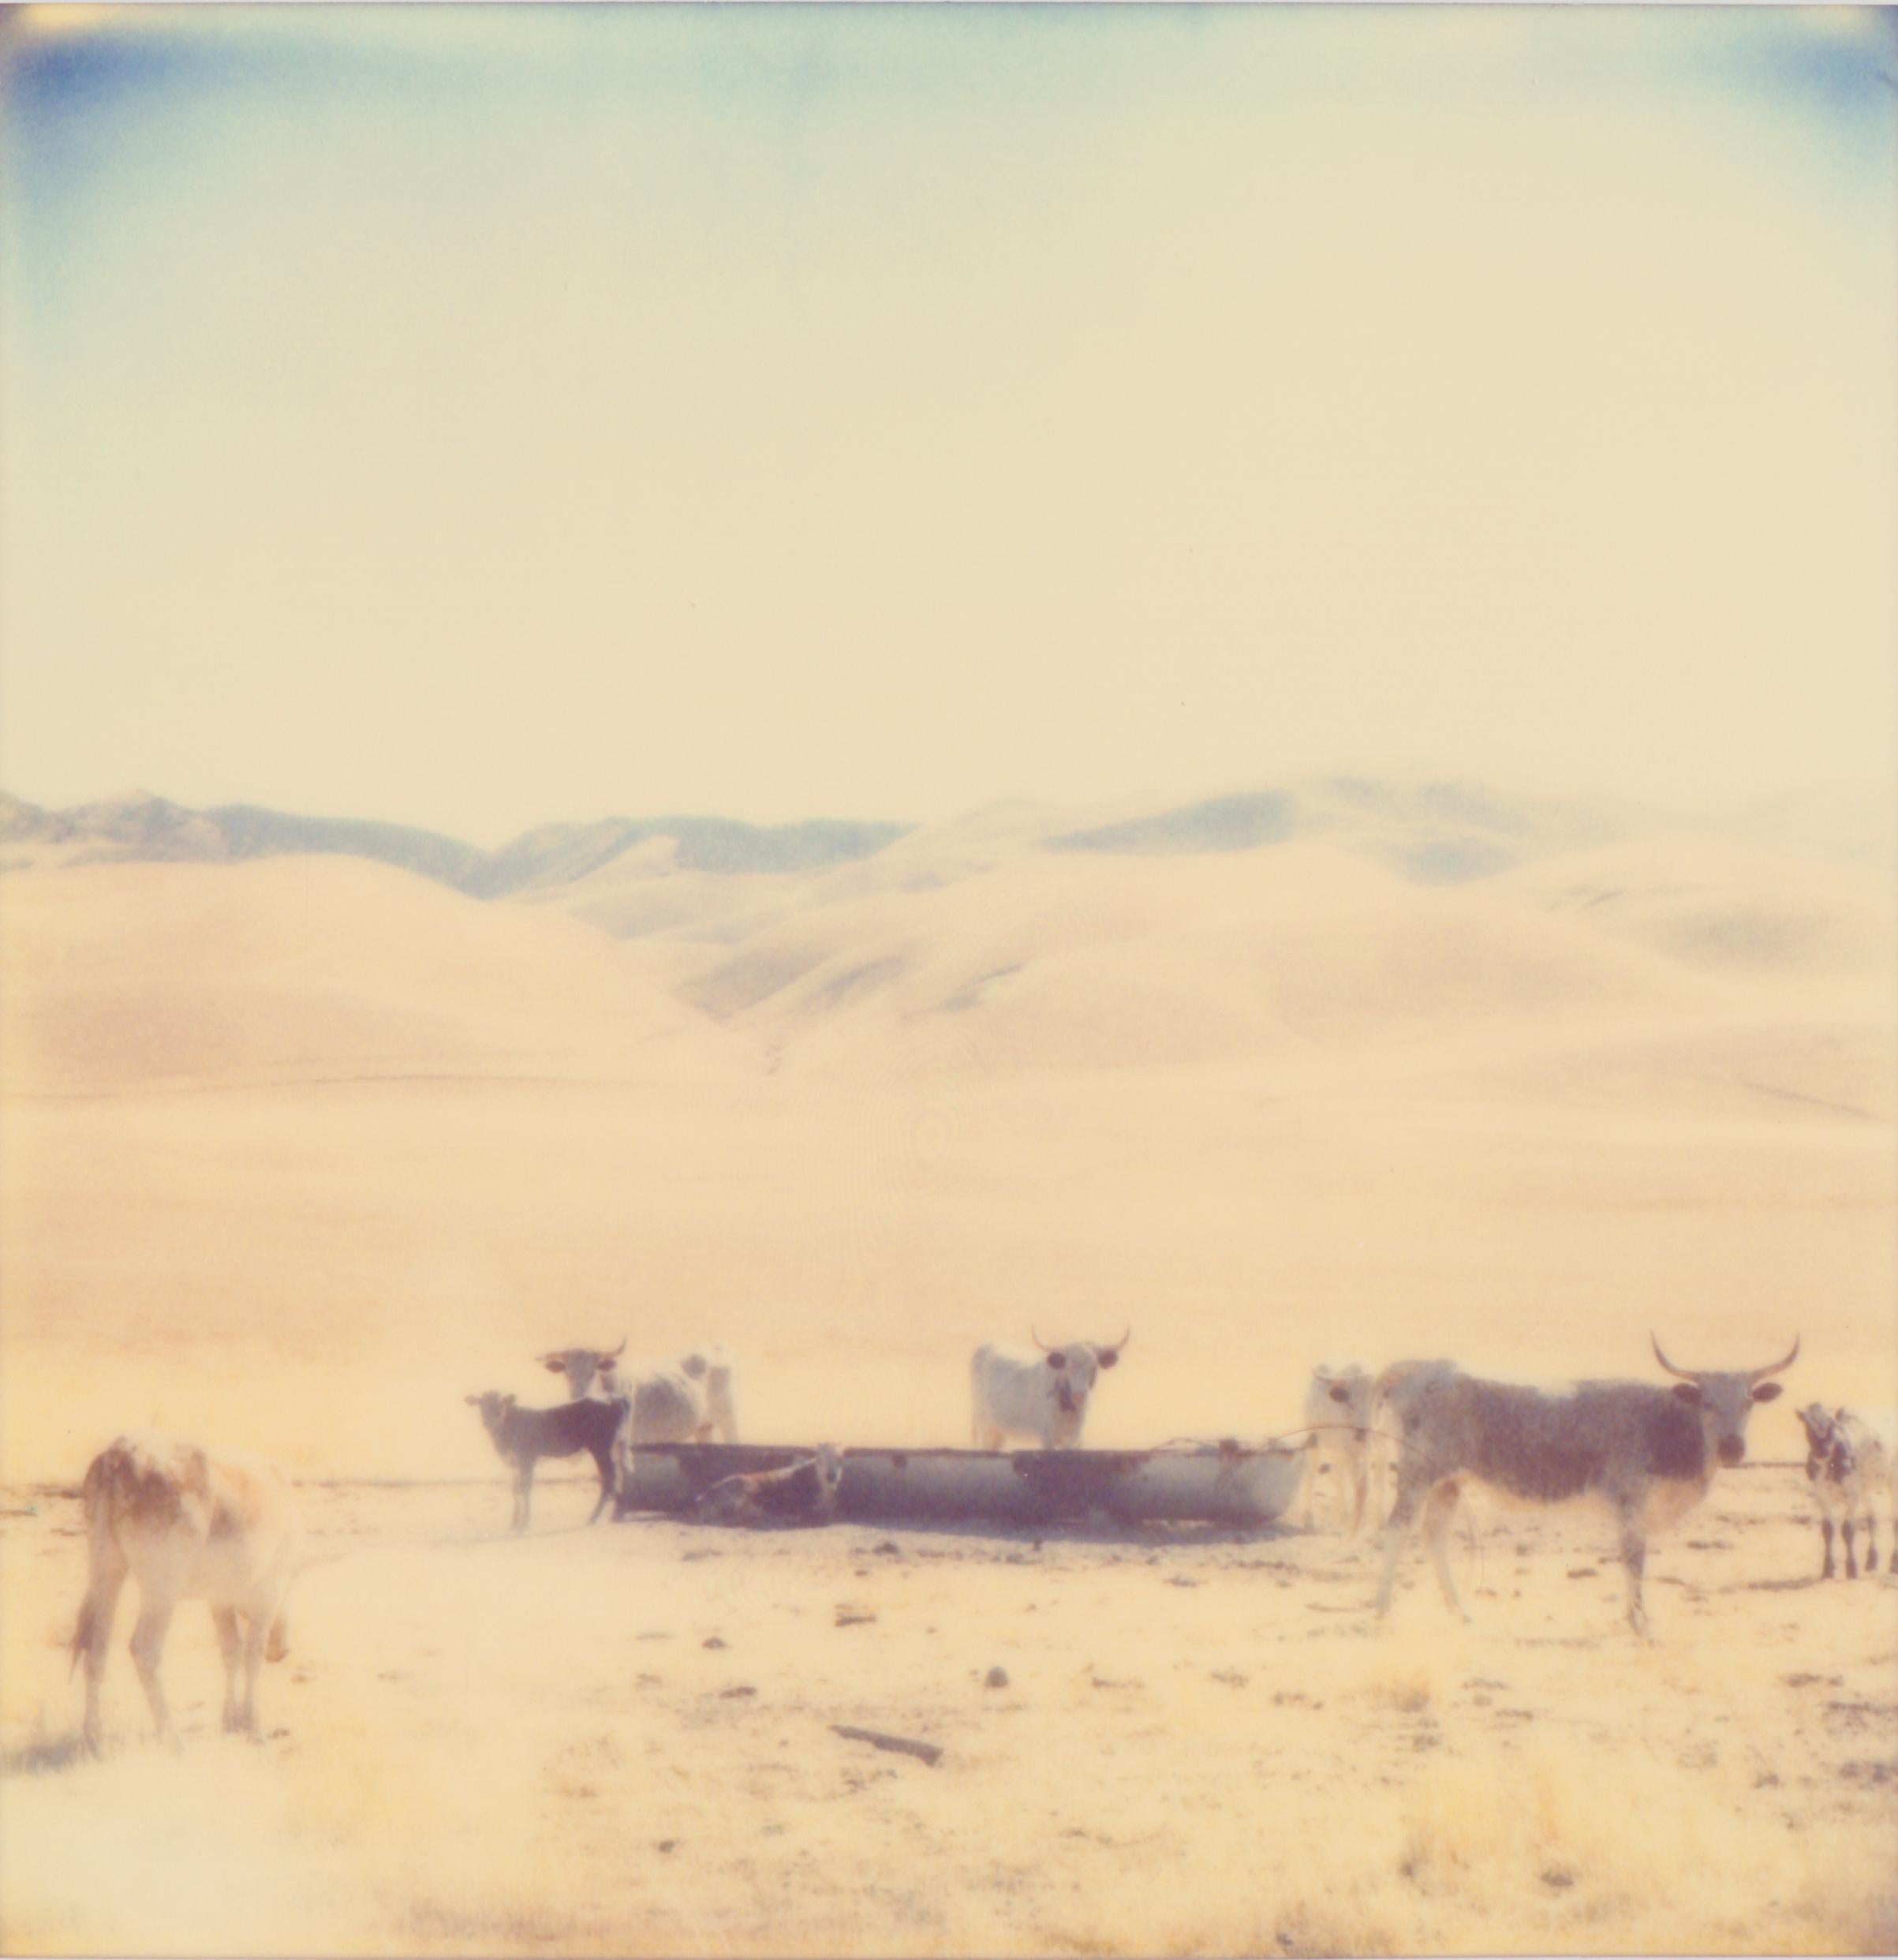 Oilfields, diptych - 21 Century, Polaroid, Contemporary, Portrait, Landscape - Photograph by Stefanie Schneider